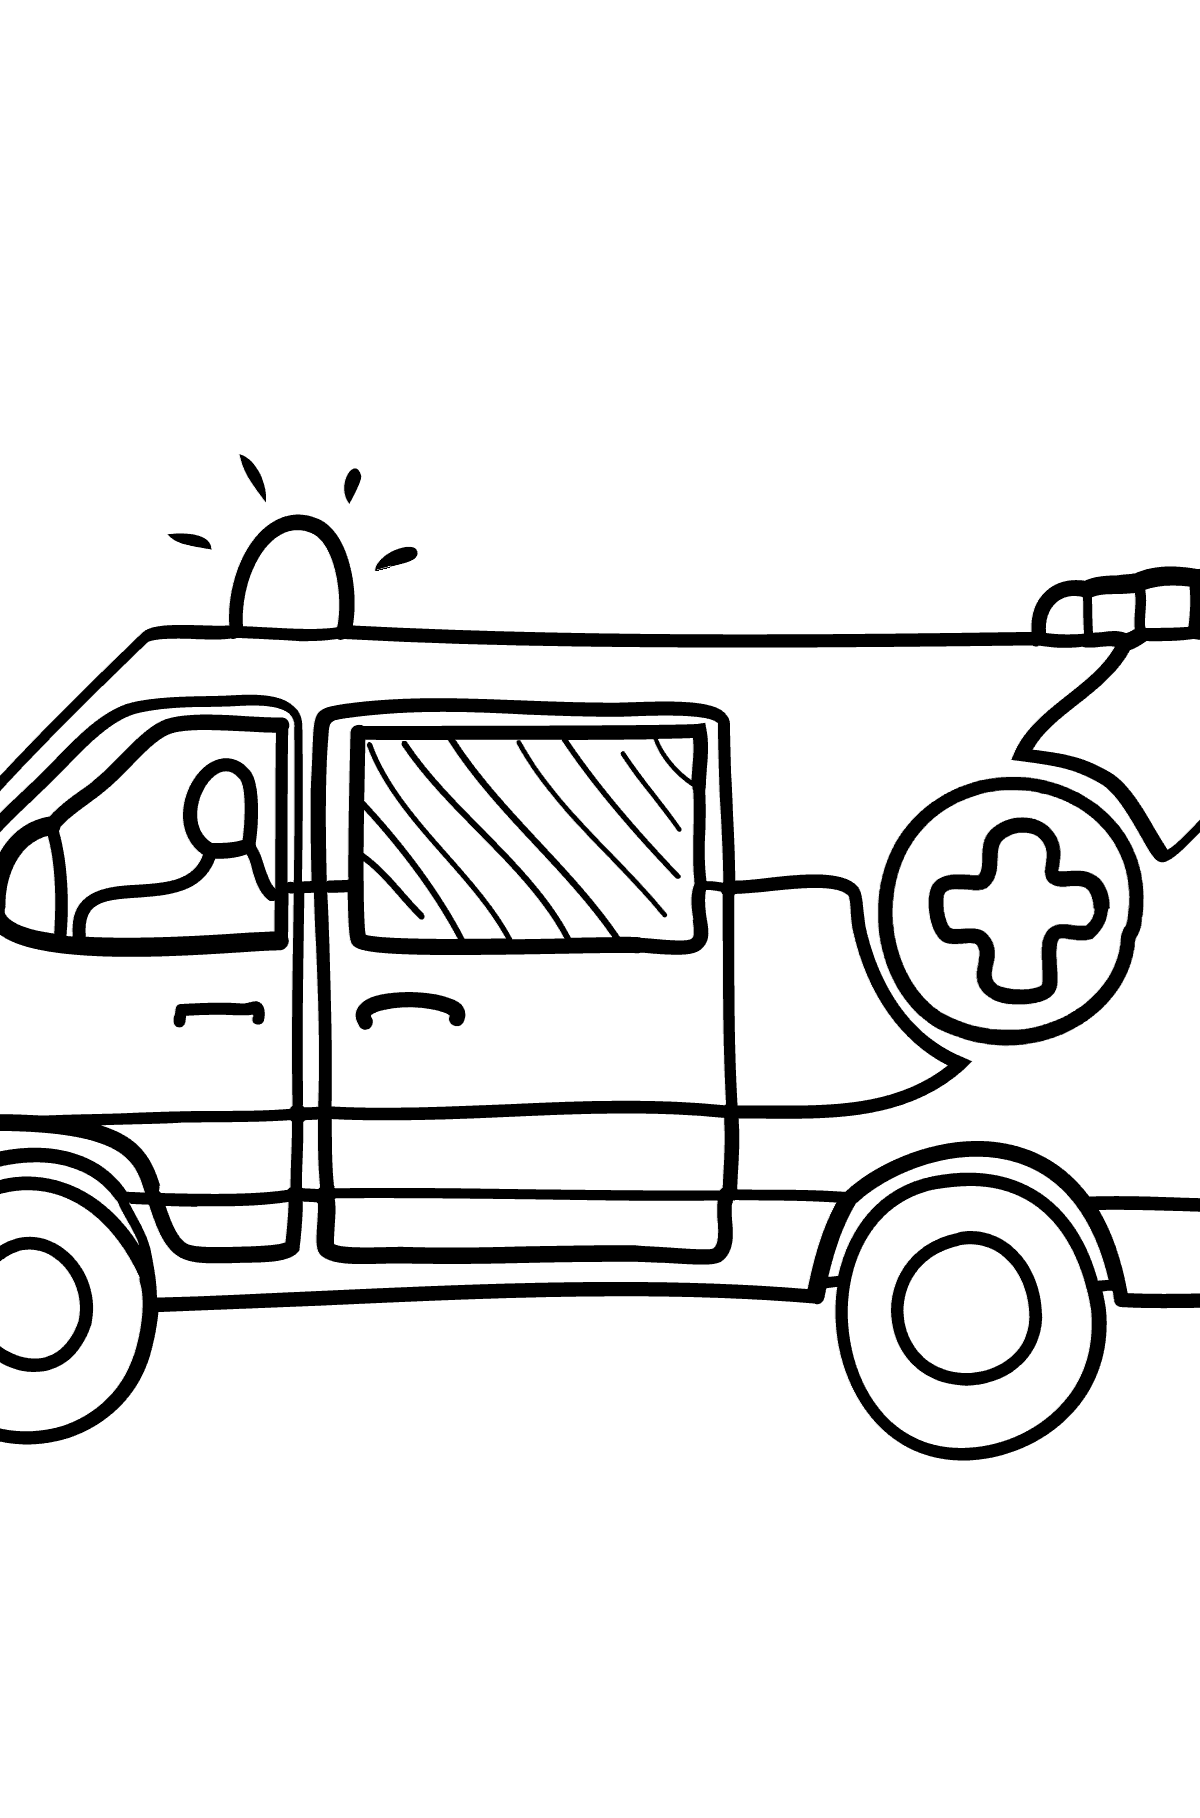 Tegning til fargelegging Ambulanse - Tegninger til fargelegging for barn